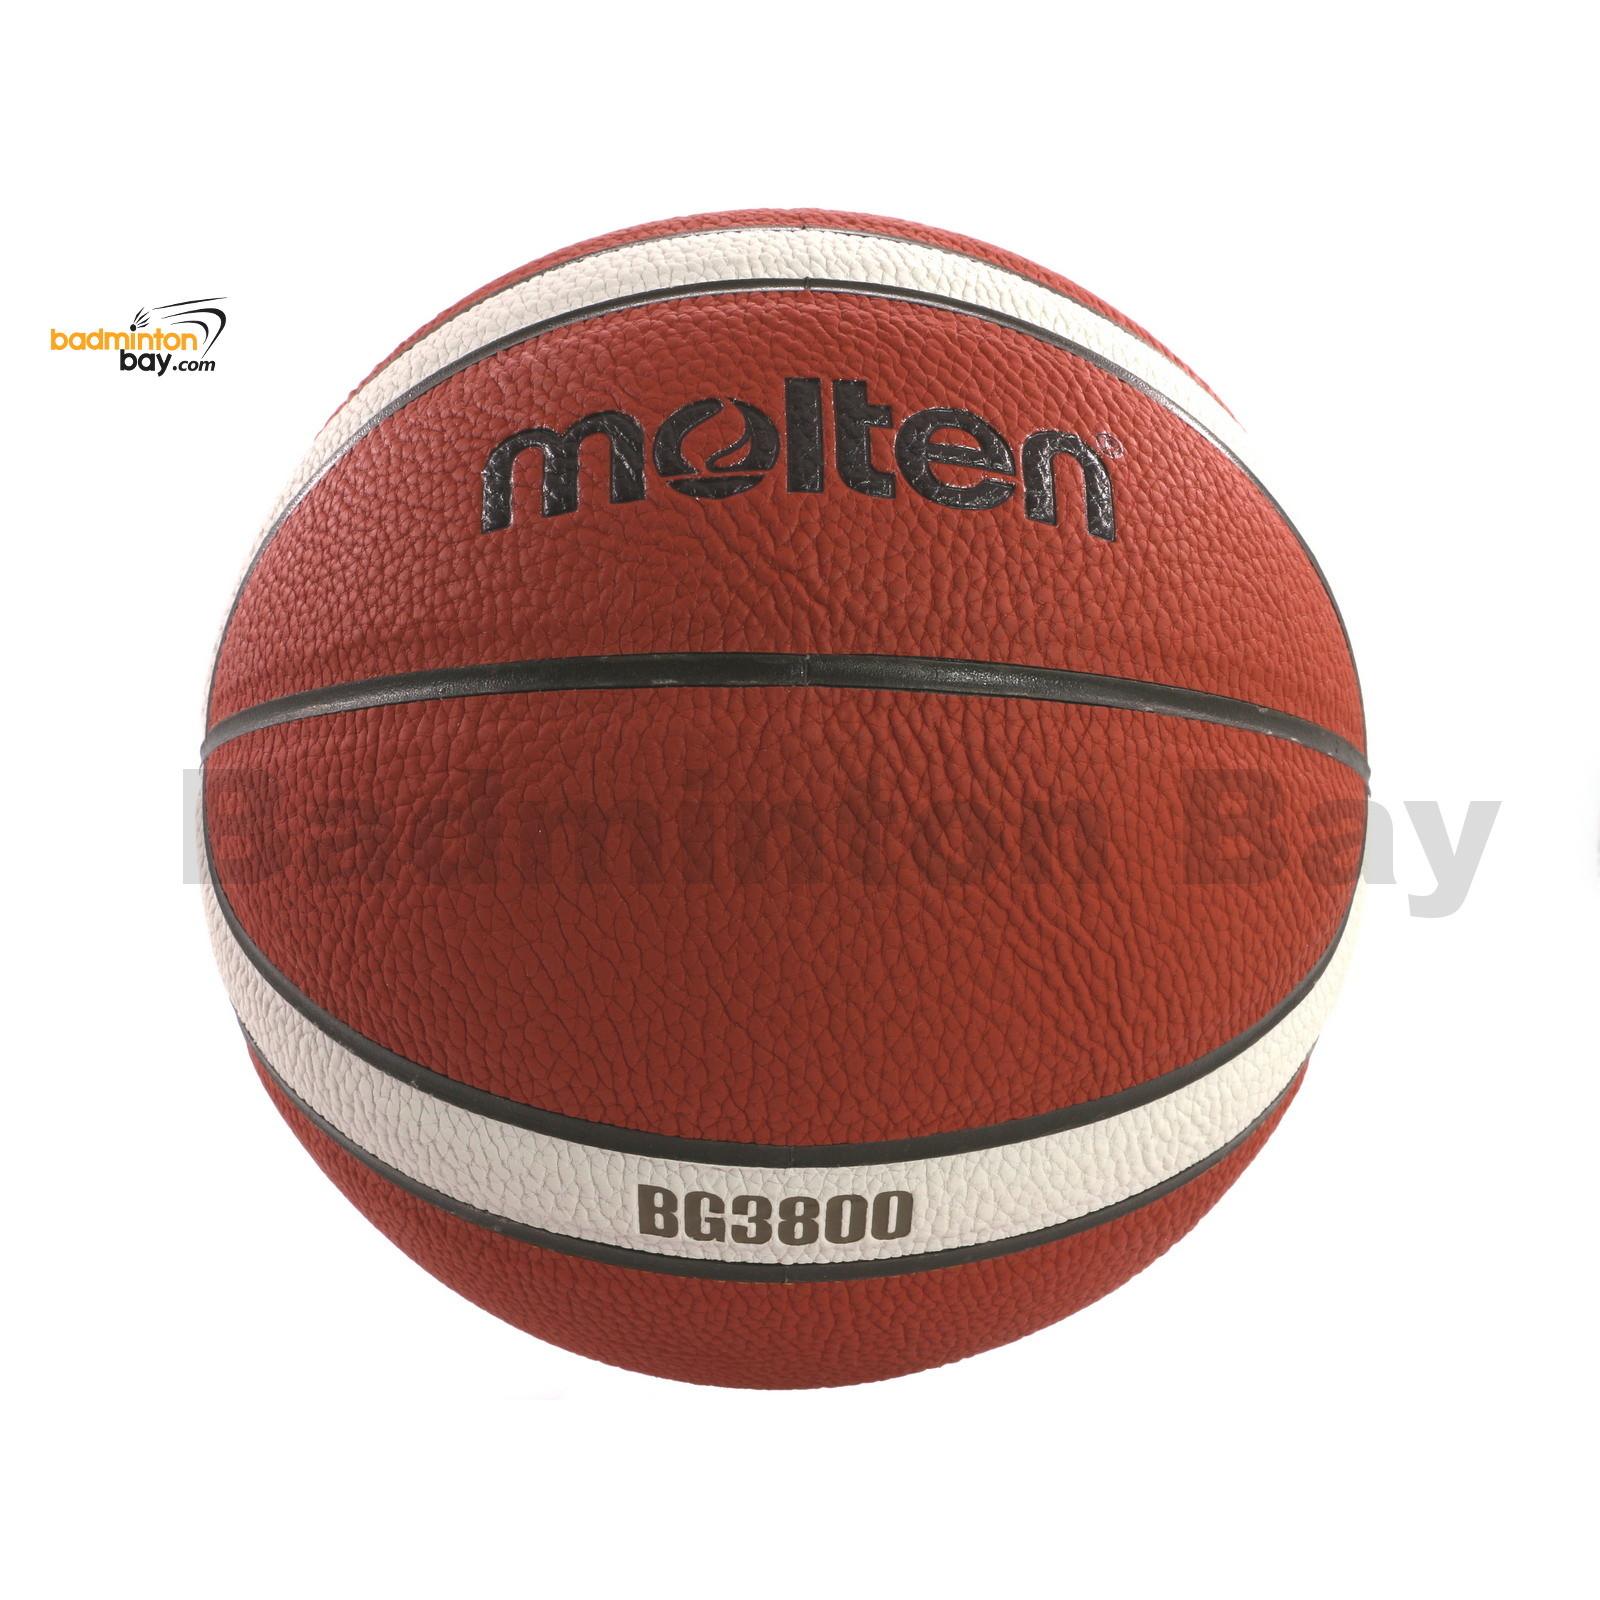 Molten Basketball Official Men's Size #7 Outdoor Training Basketball Ball 